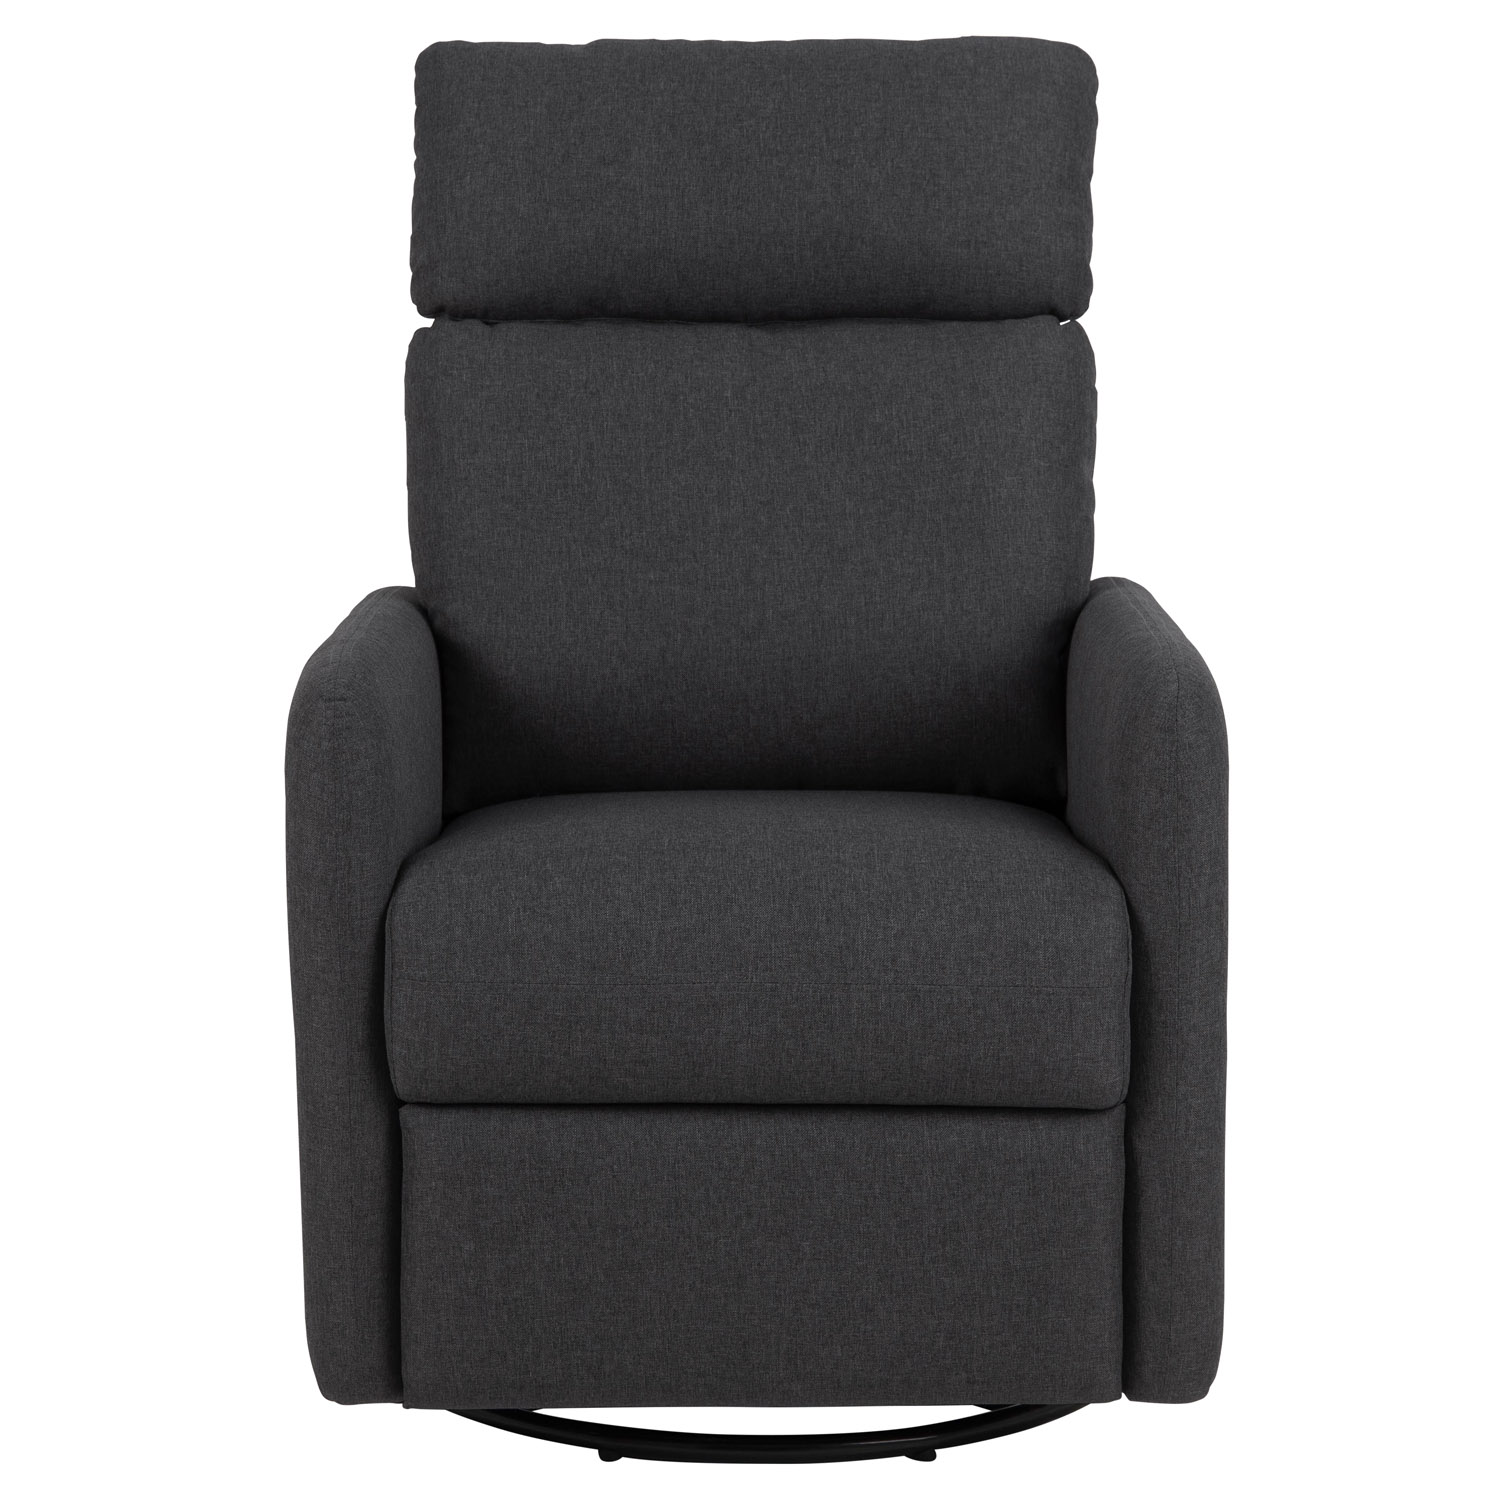 ACT NORDIC Mikkeli recliner stol, m. drejefod og vippefunktion - grå polyester og sort metal